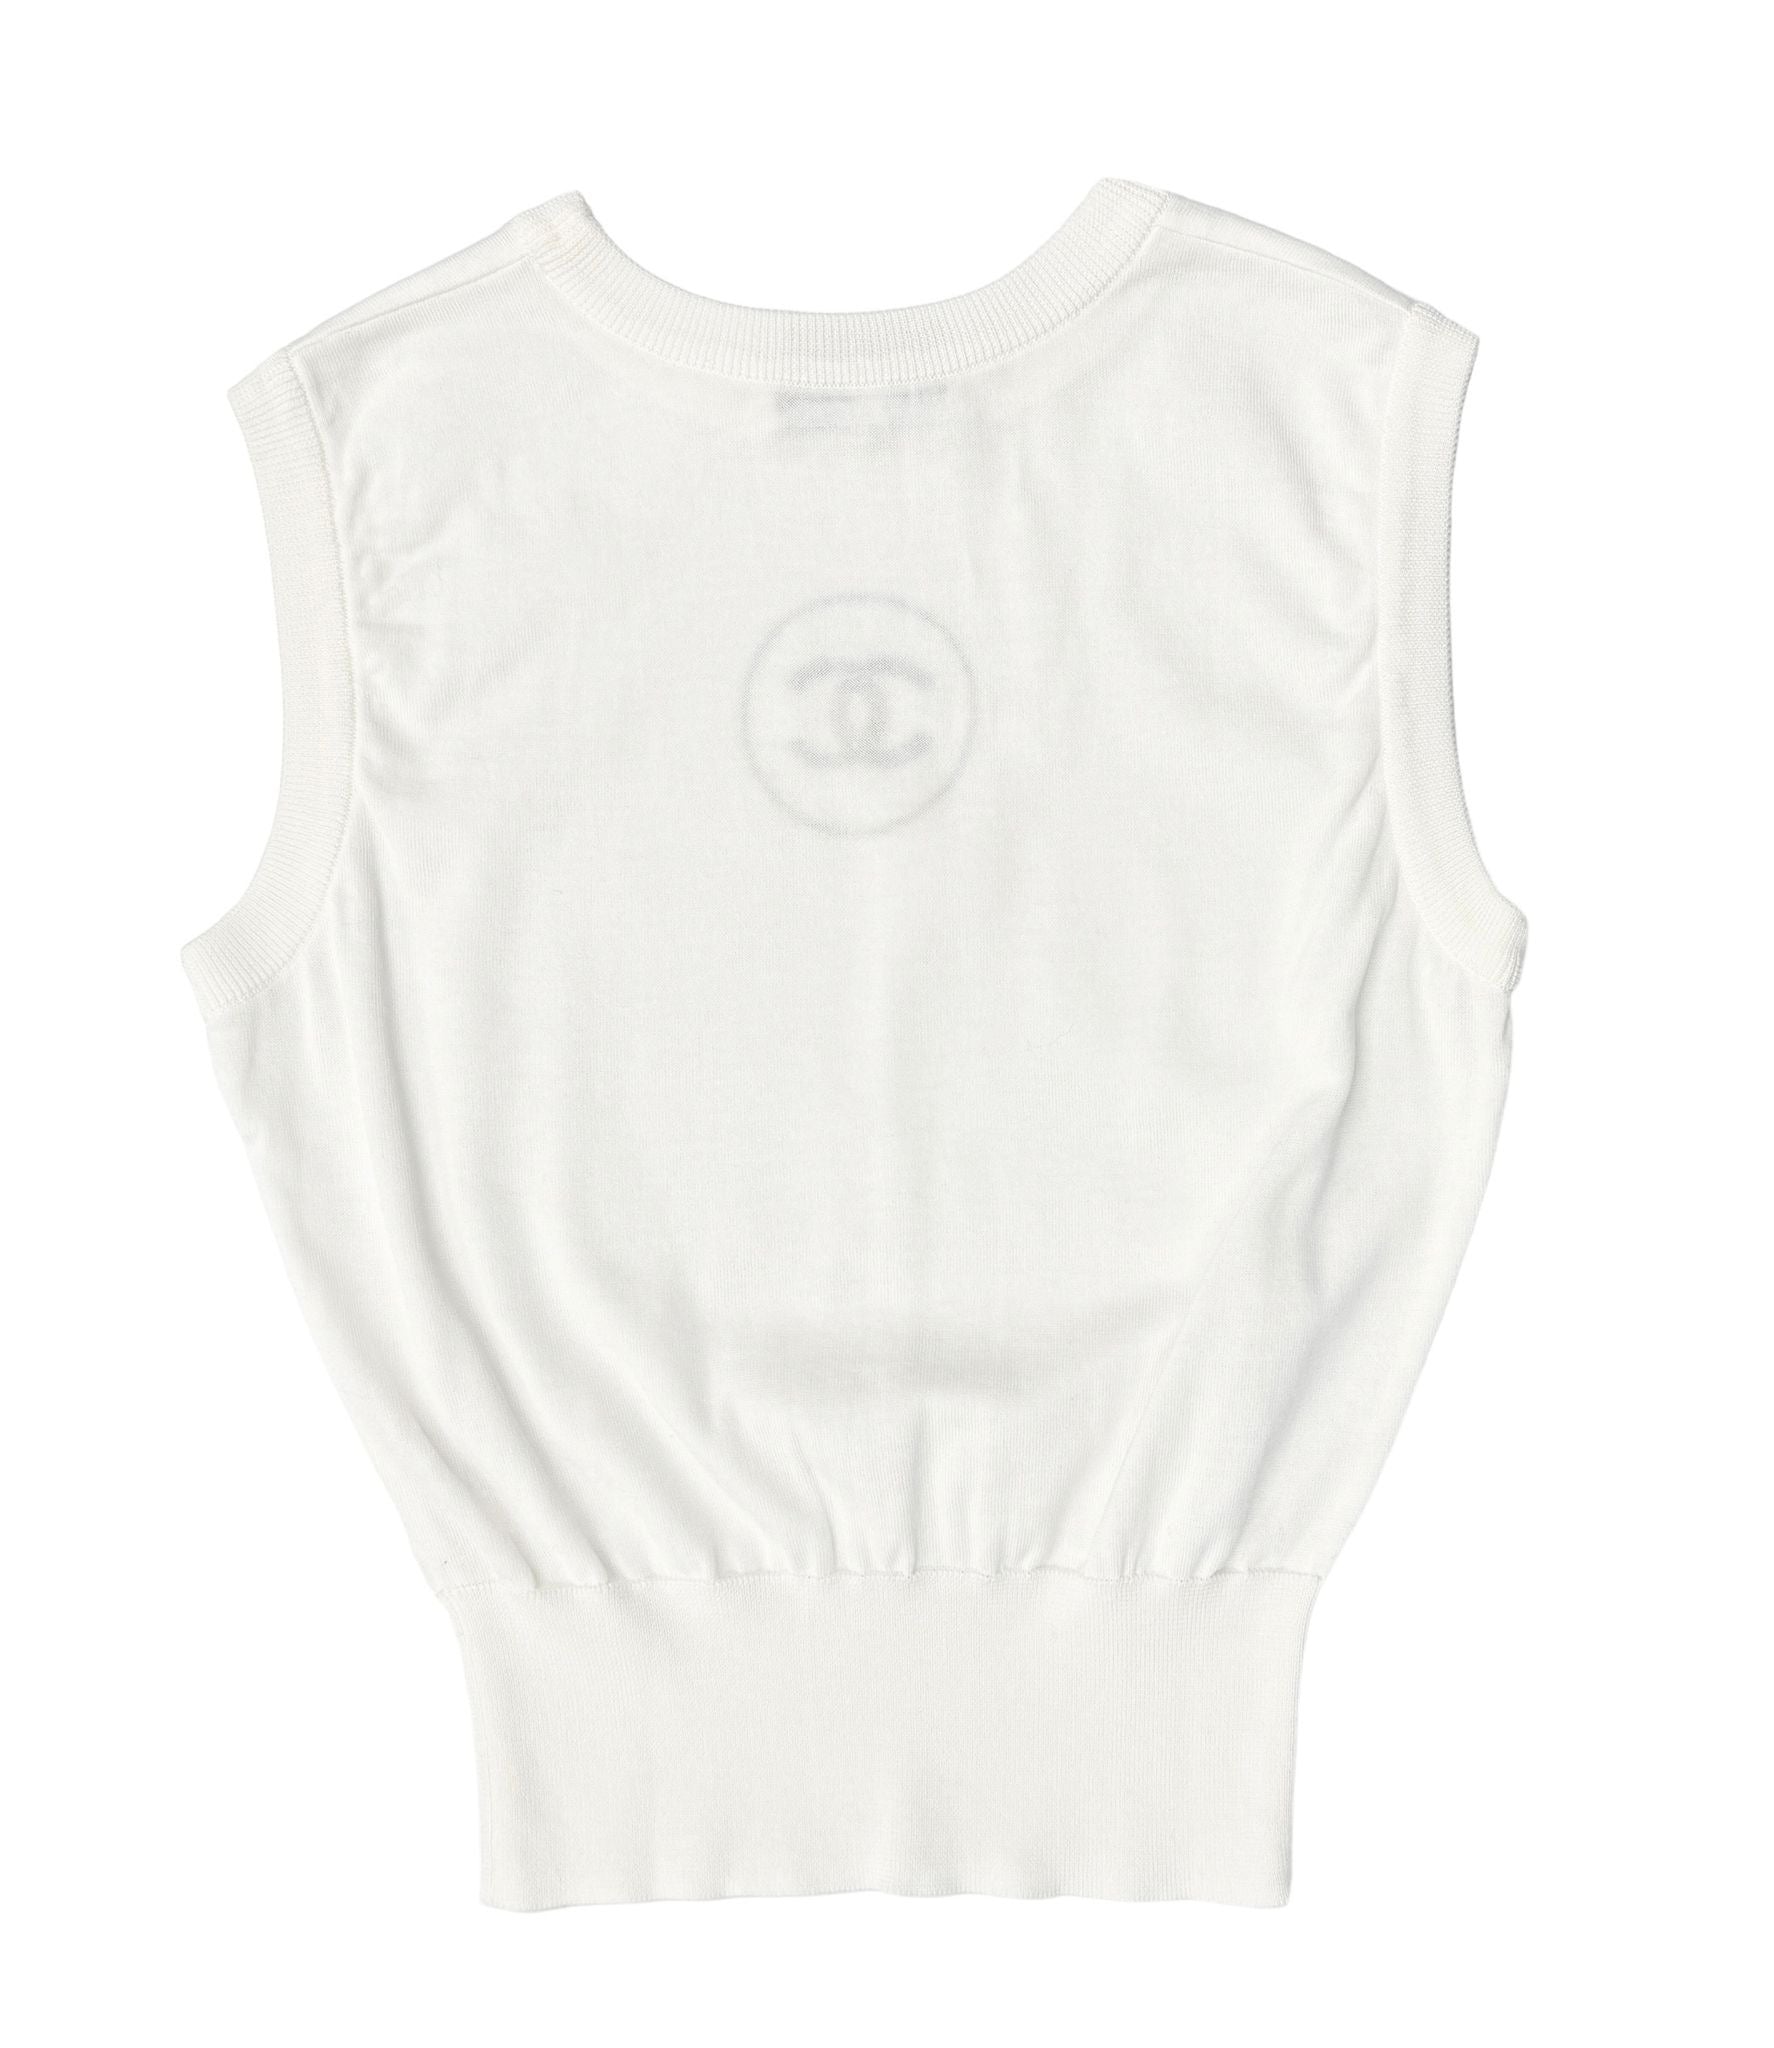 Chanel White Logo Tank Top